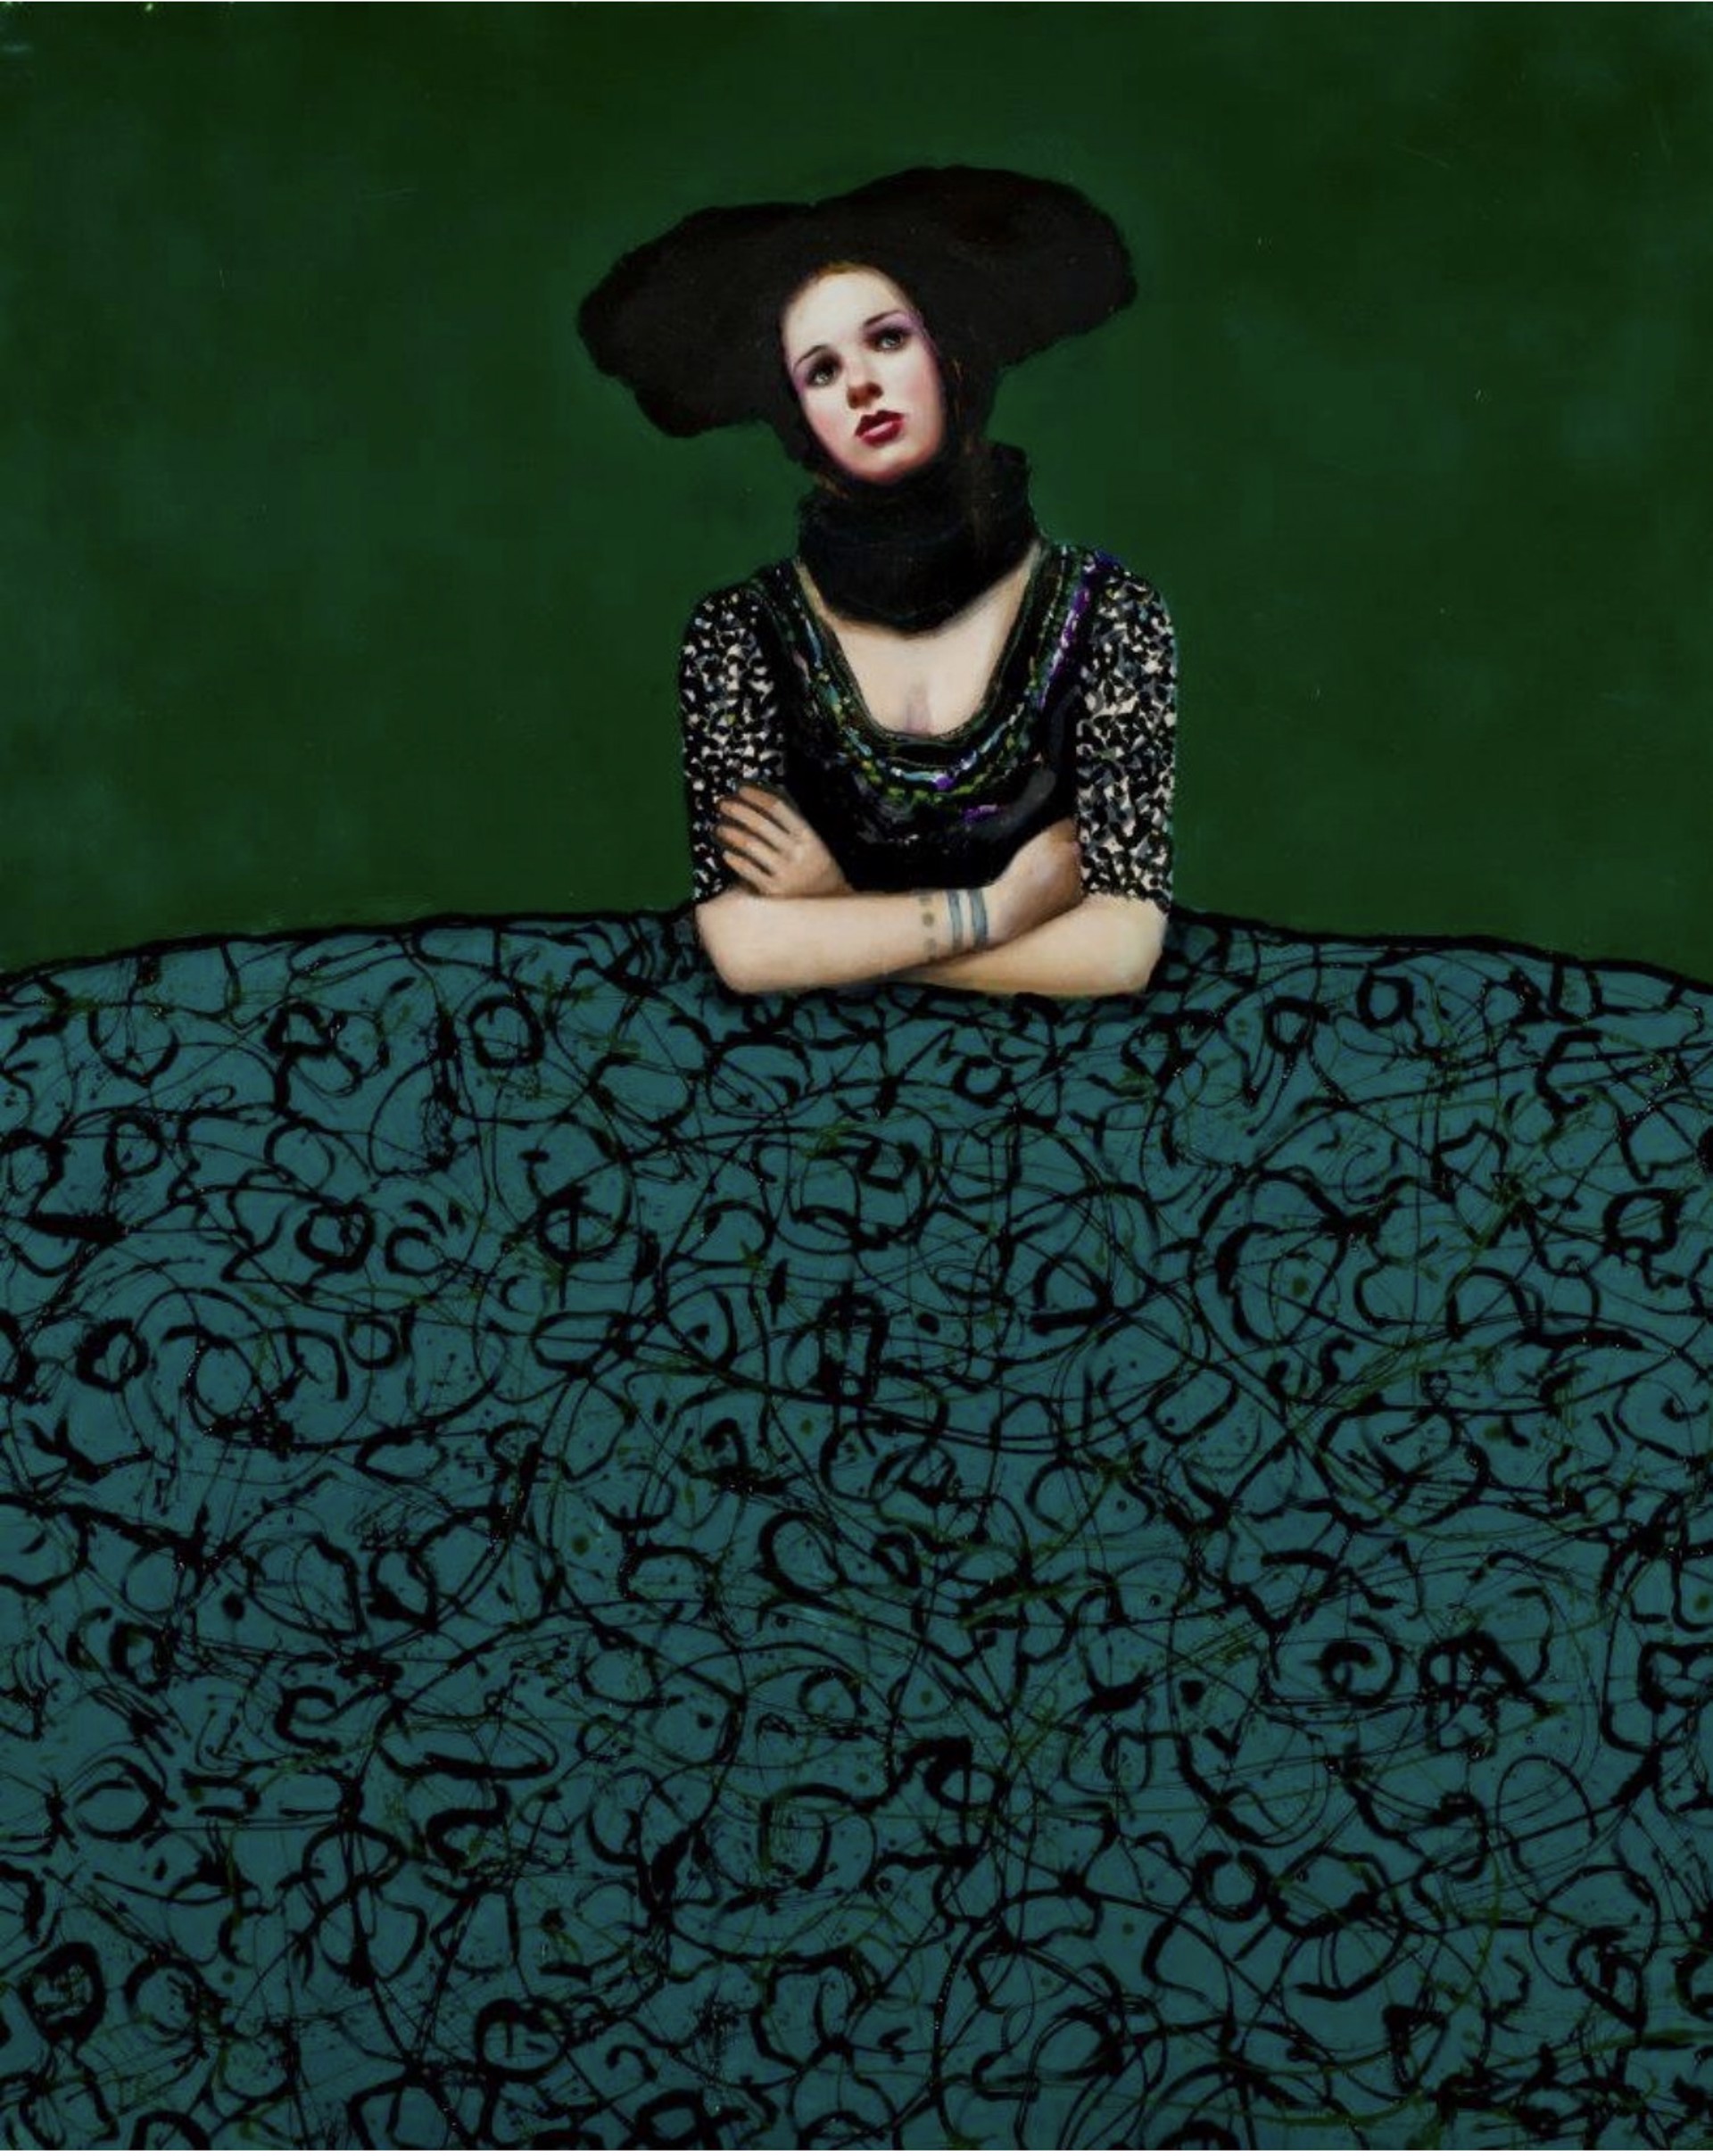 Menina Verde y Negra by Alfredo Palmero